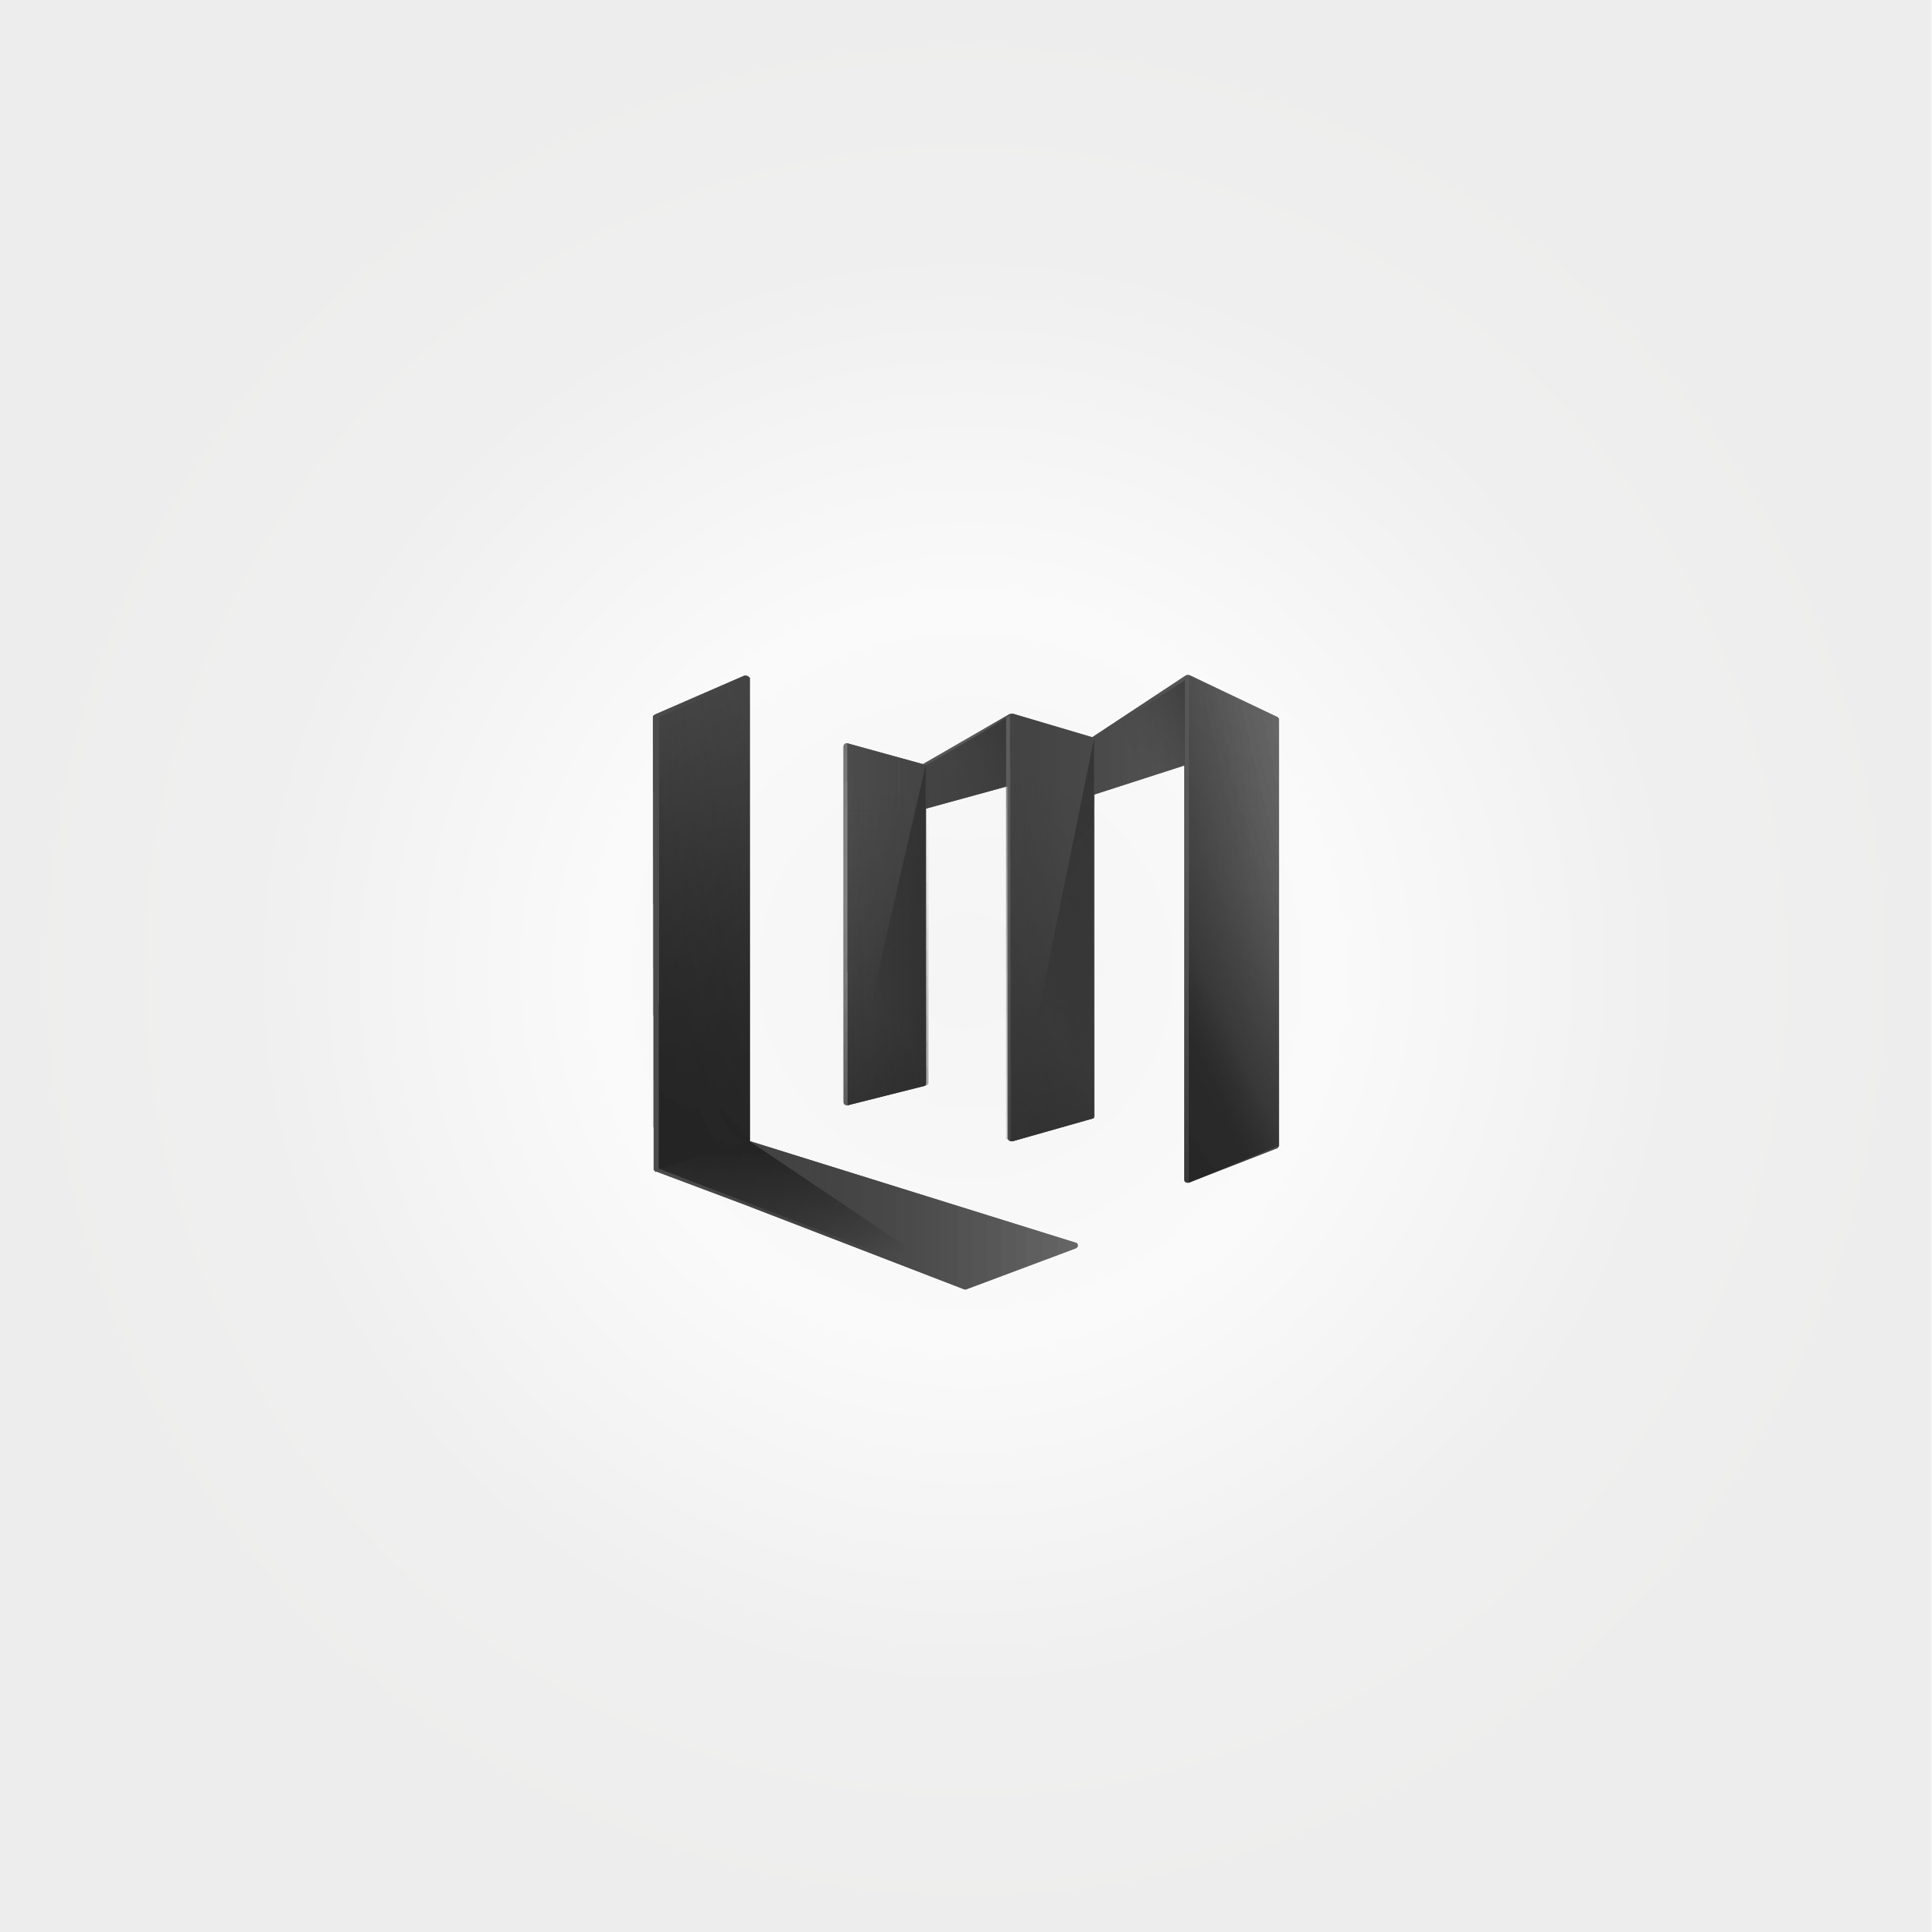 Lm Logo - per La Monaca serramenti. #lm #logo #design #brand #branding